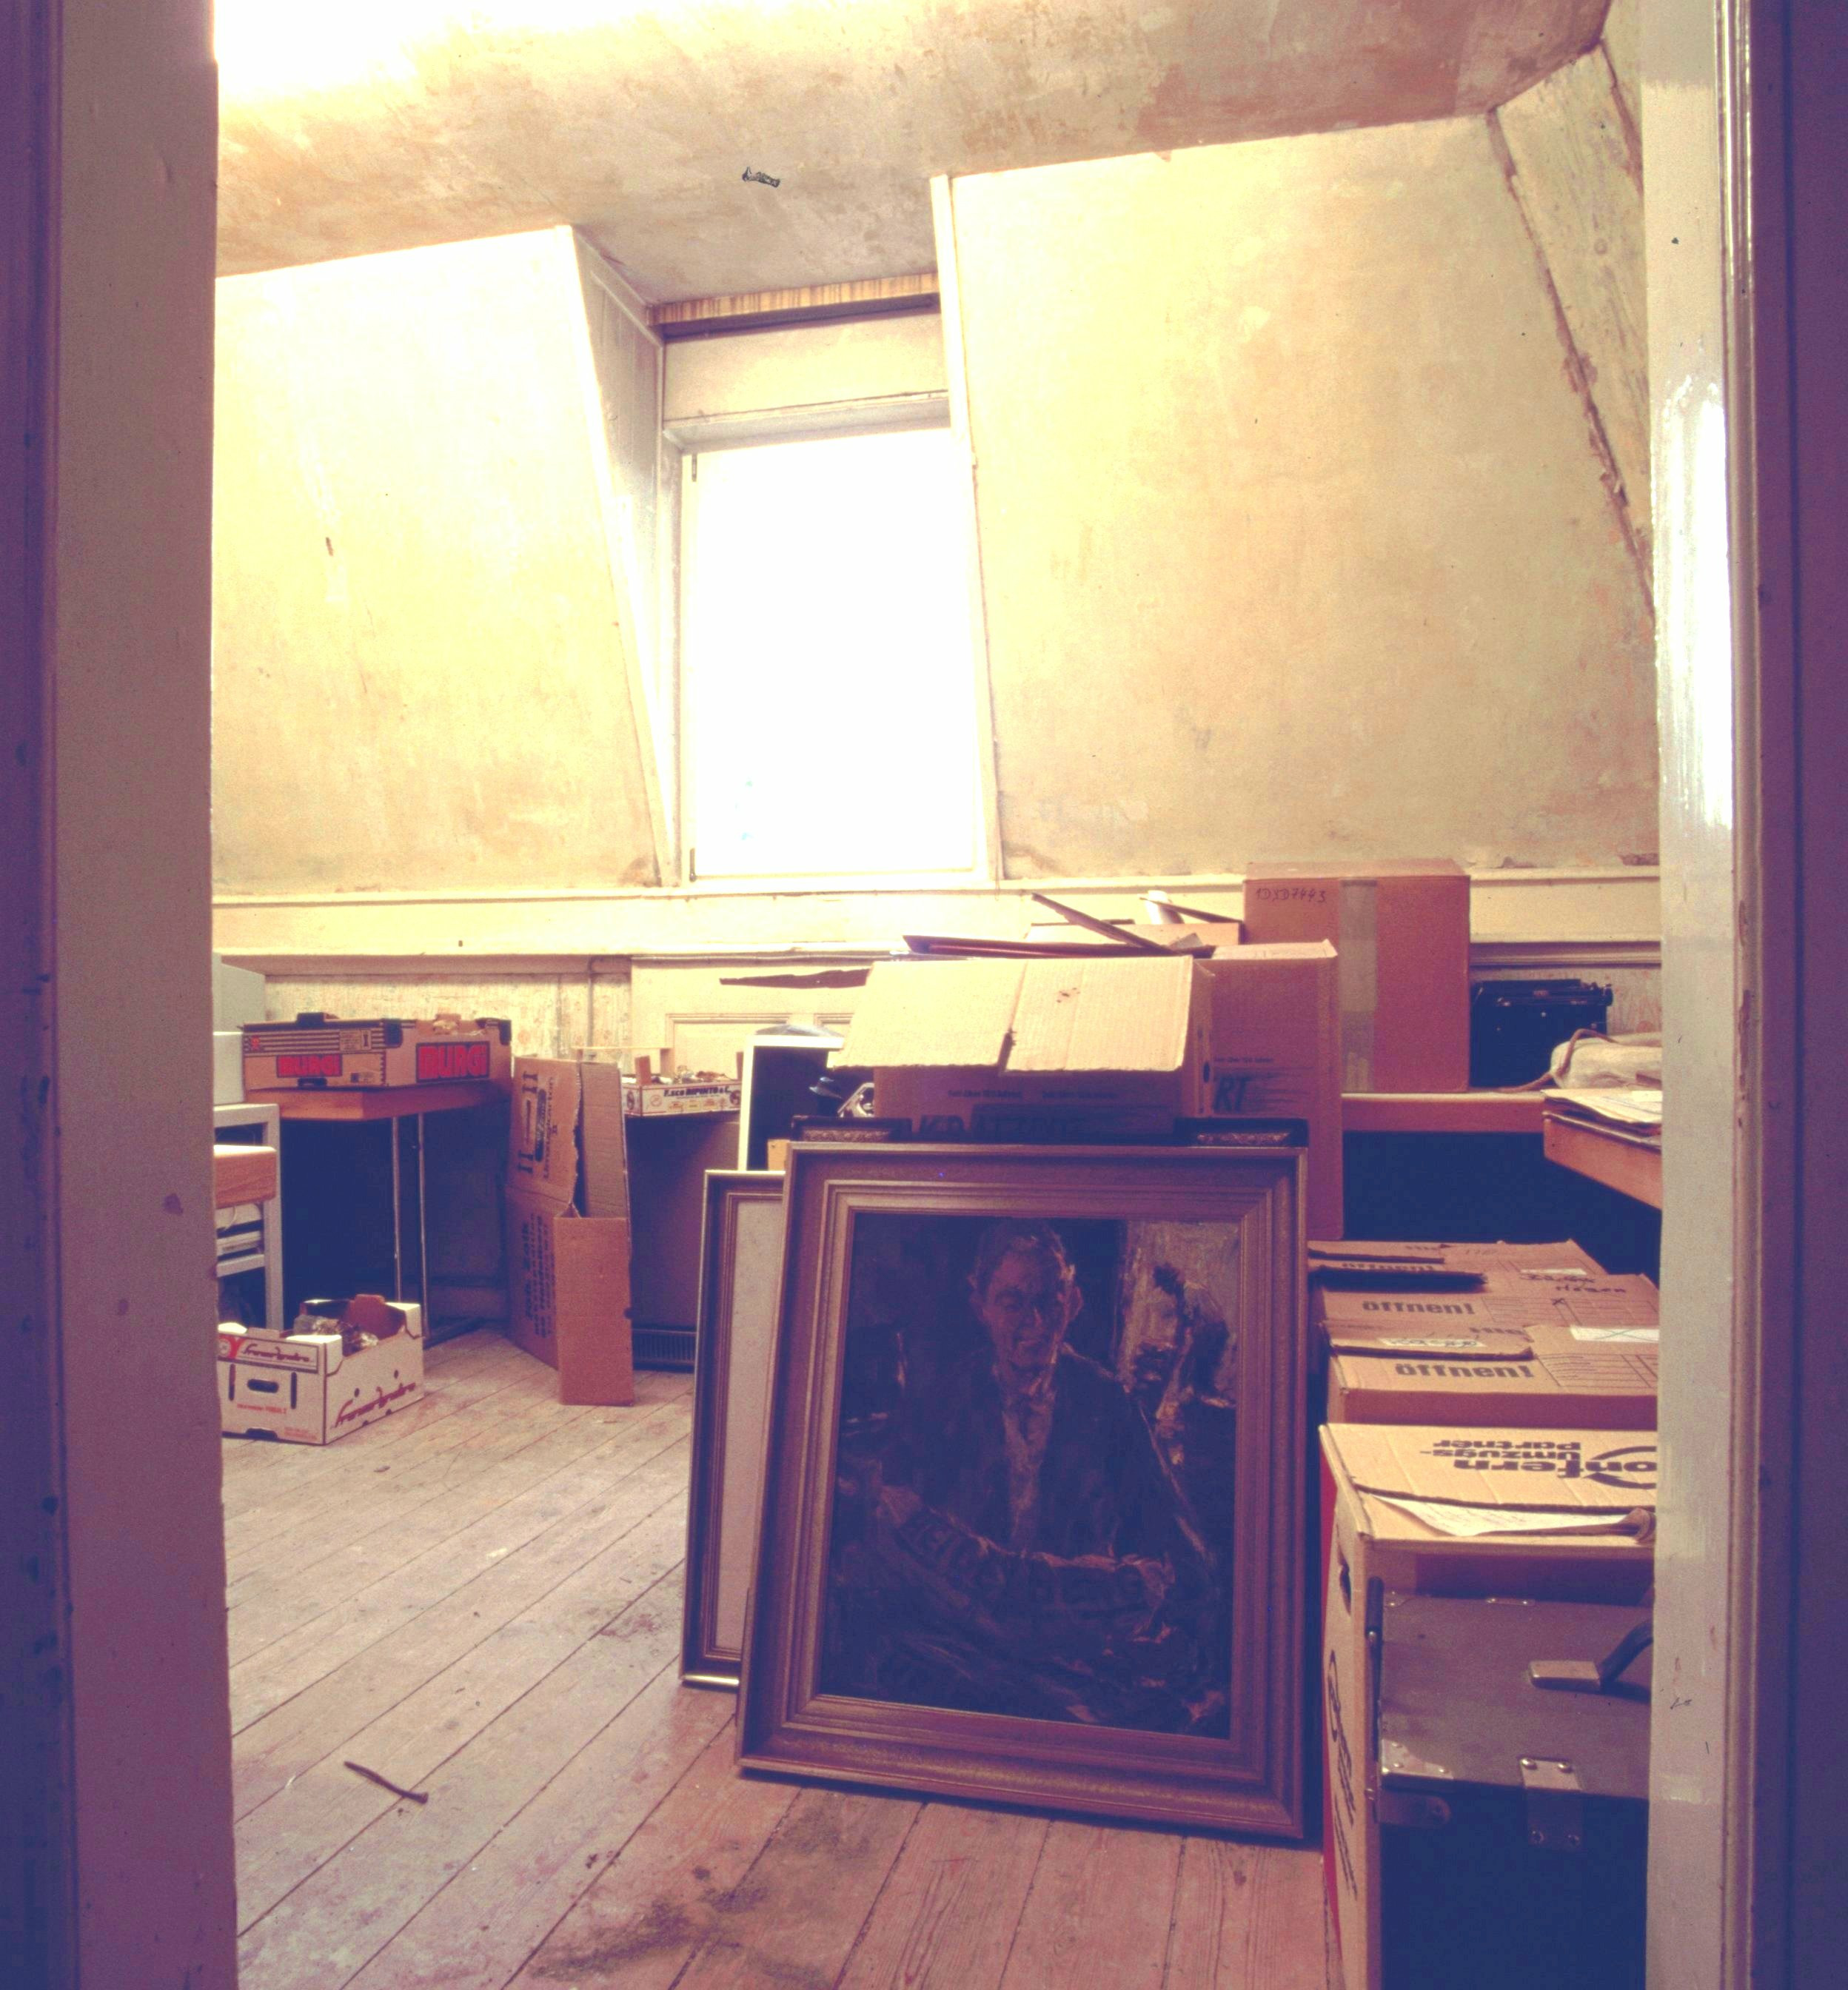 Karger Raum mit Holzboden, in dem Kisten und eingerahmte Bilder stehen